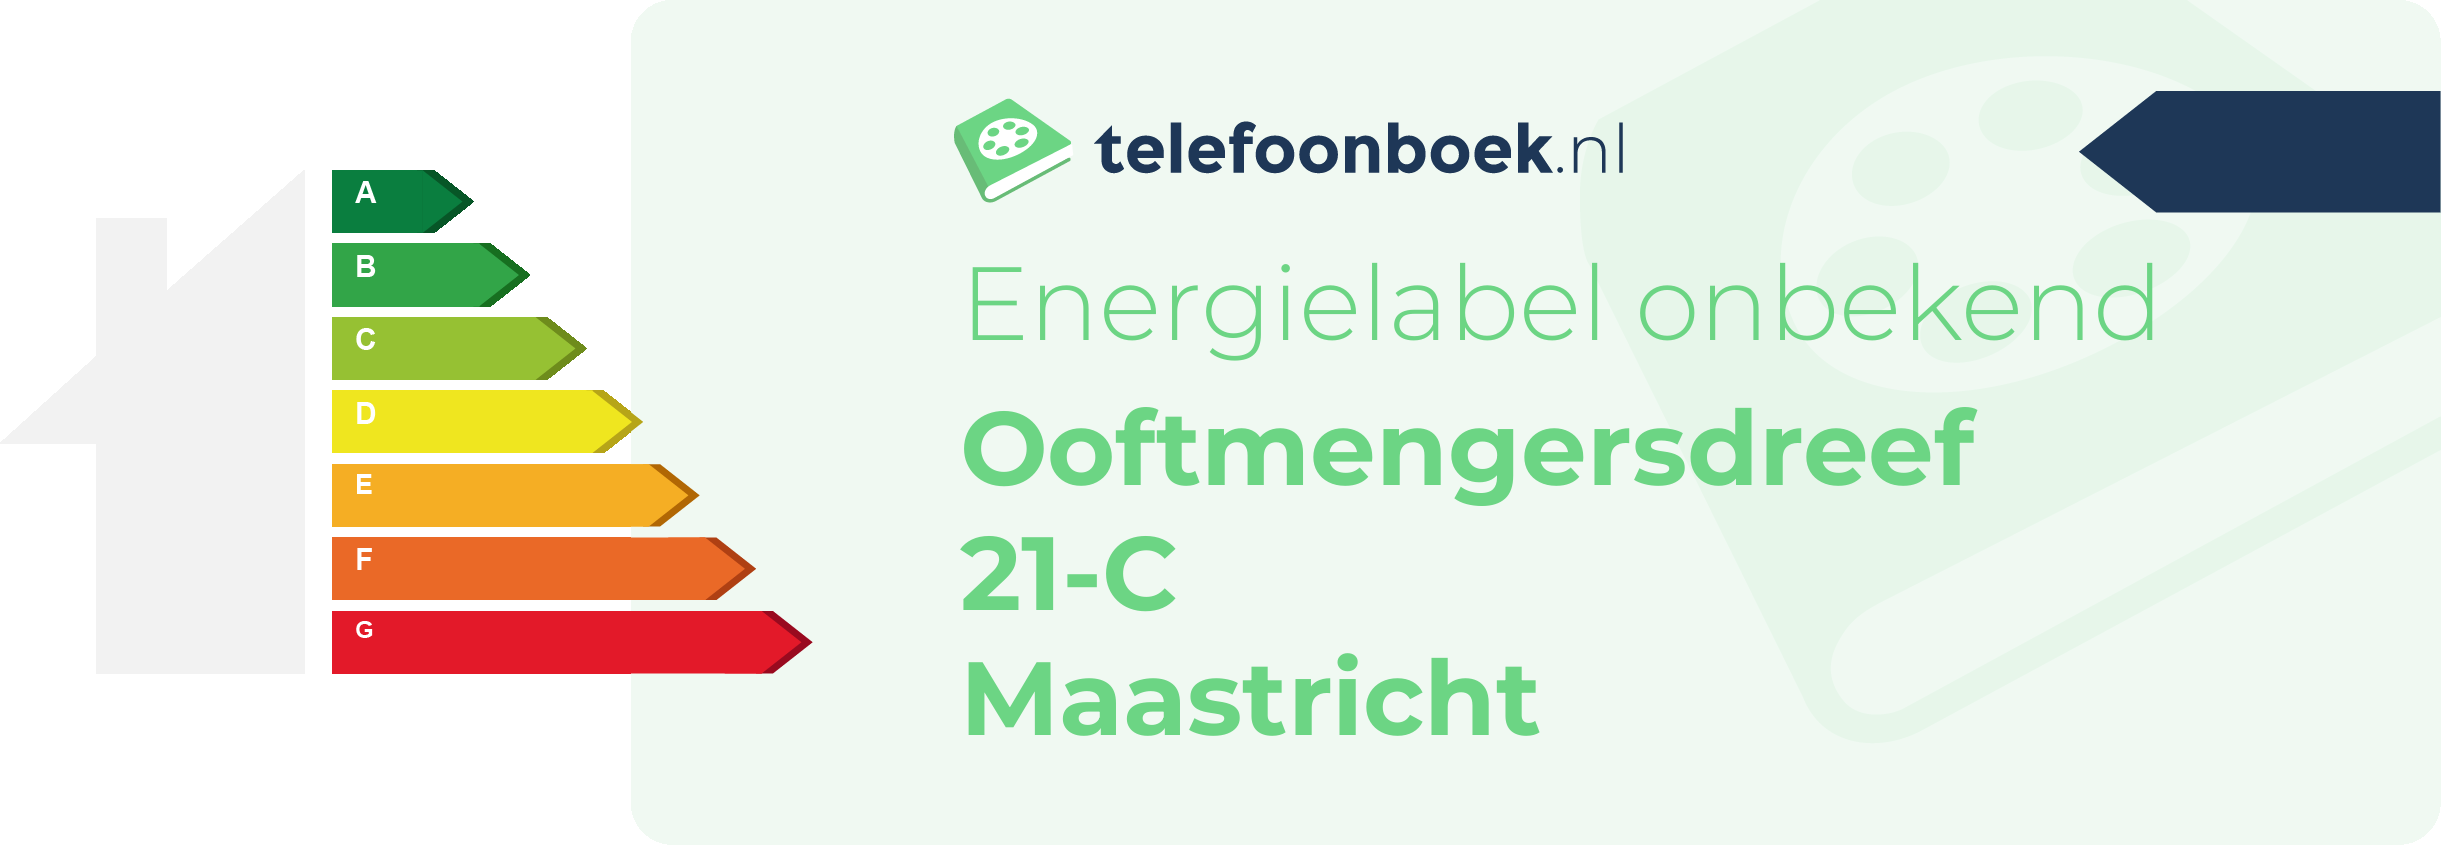 Energielabel Ooftmengersdreef 21-C Maastricht